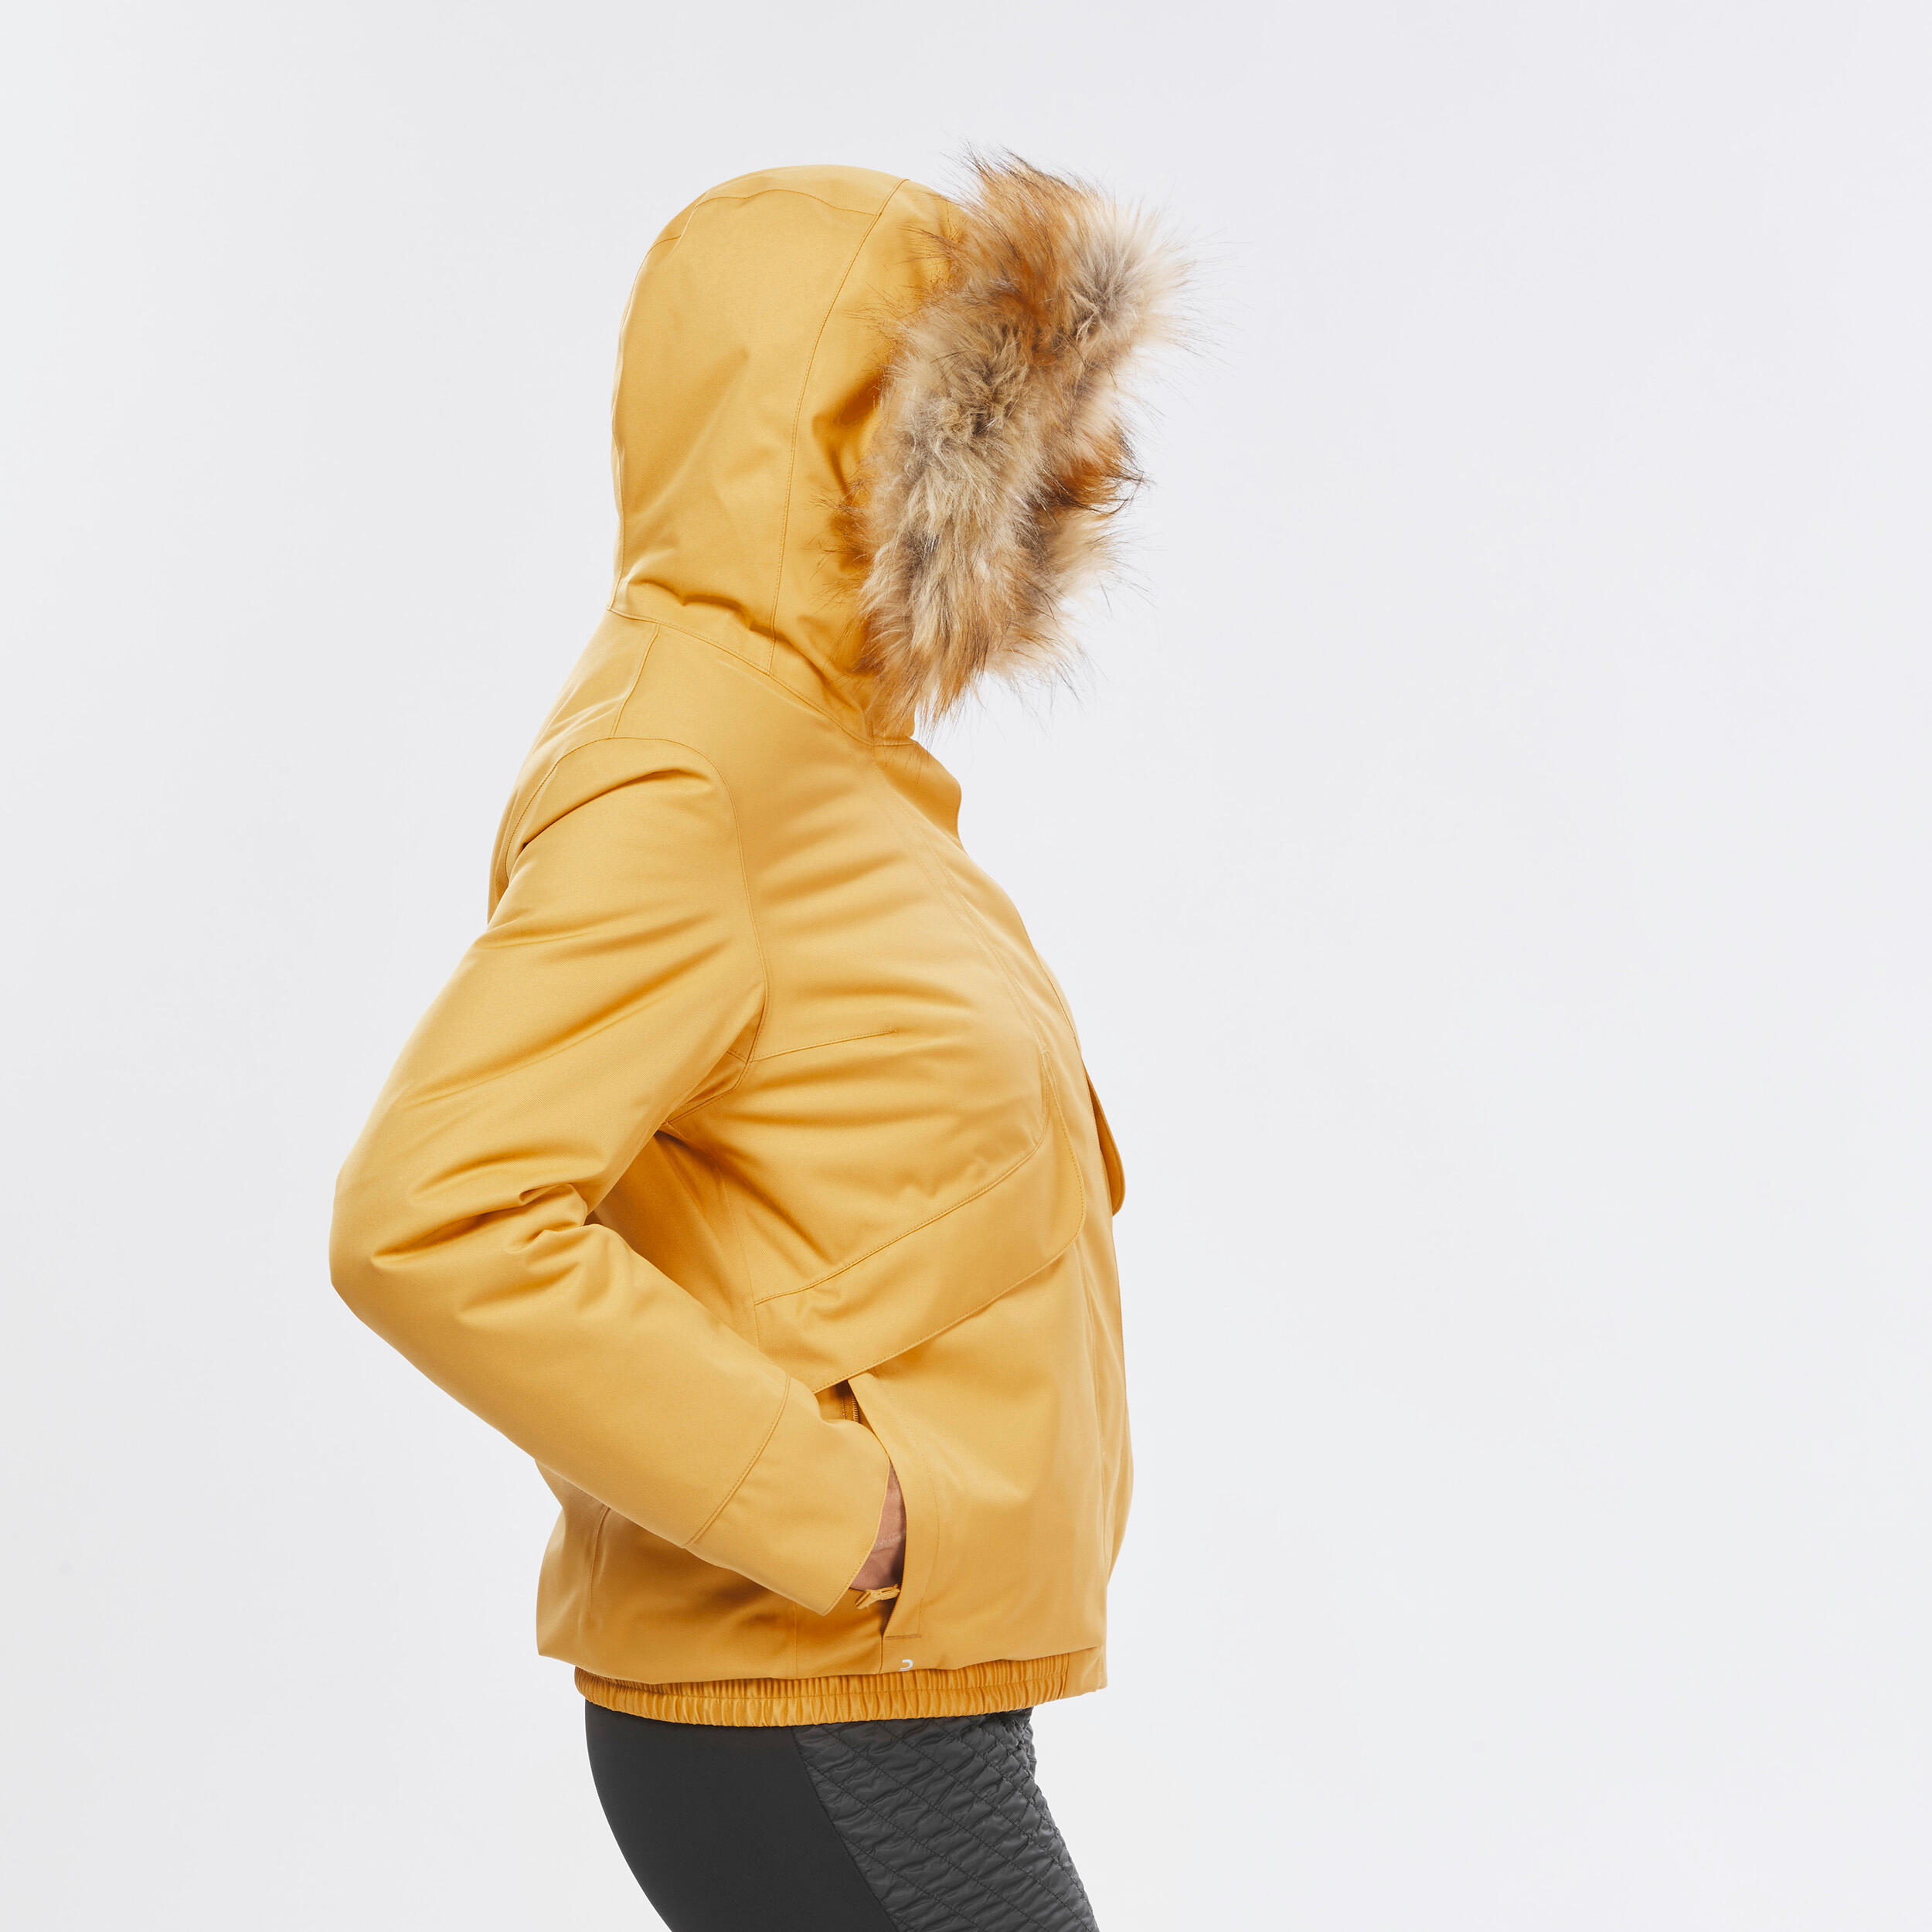 Women’s waterproof winter hiking jacket - SH500 -8°C 7/14